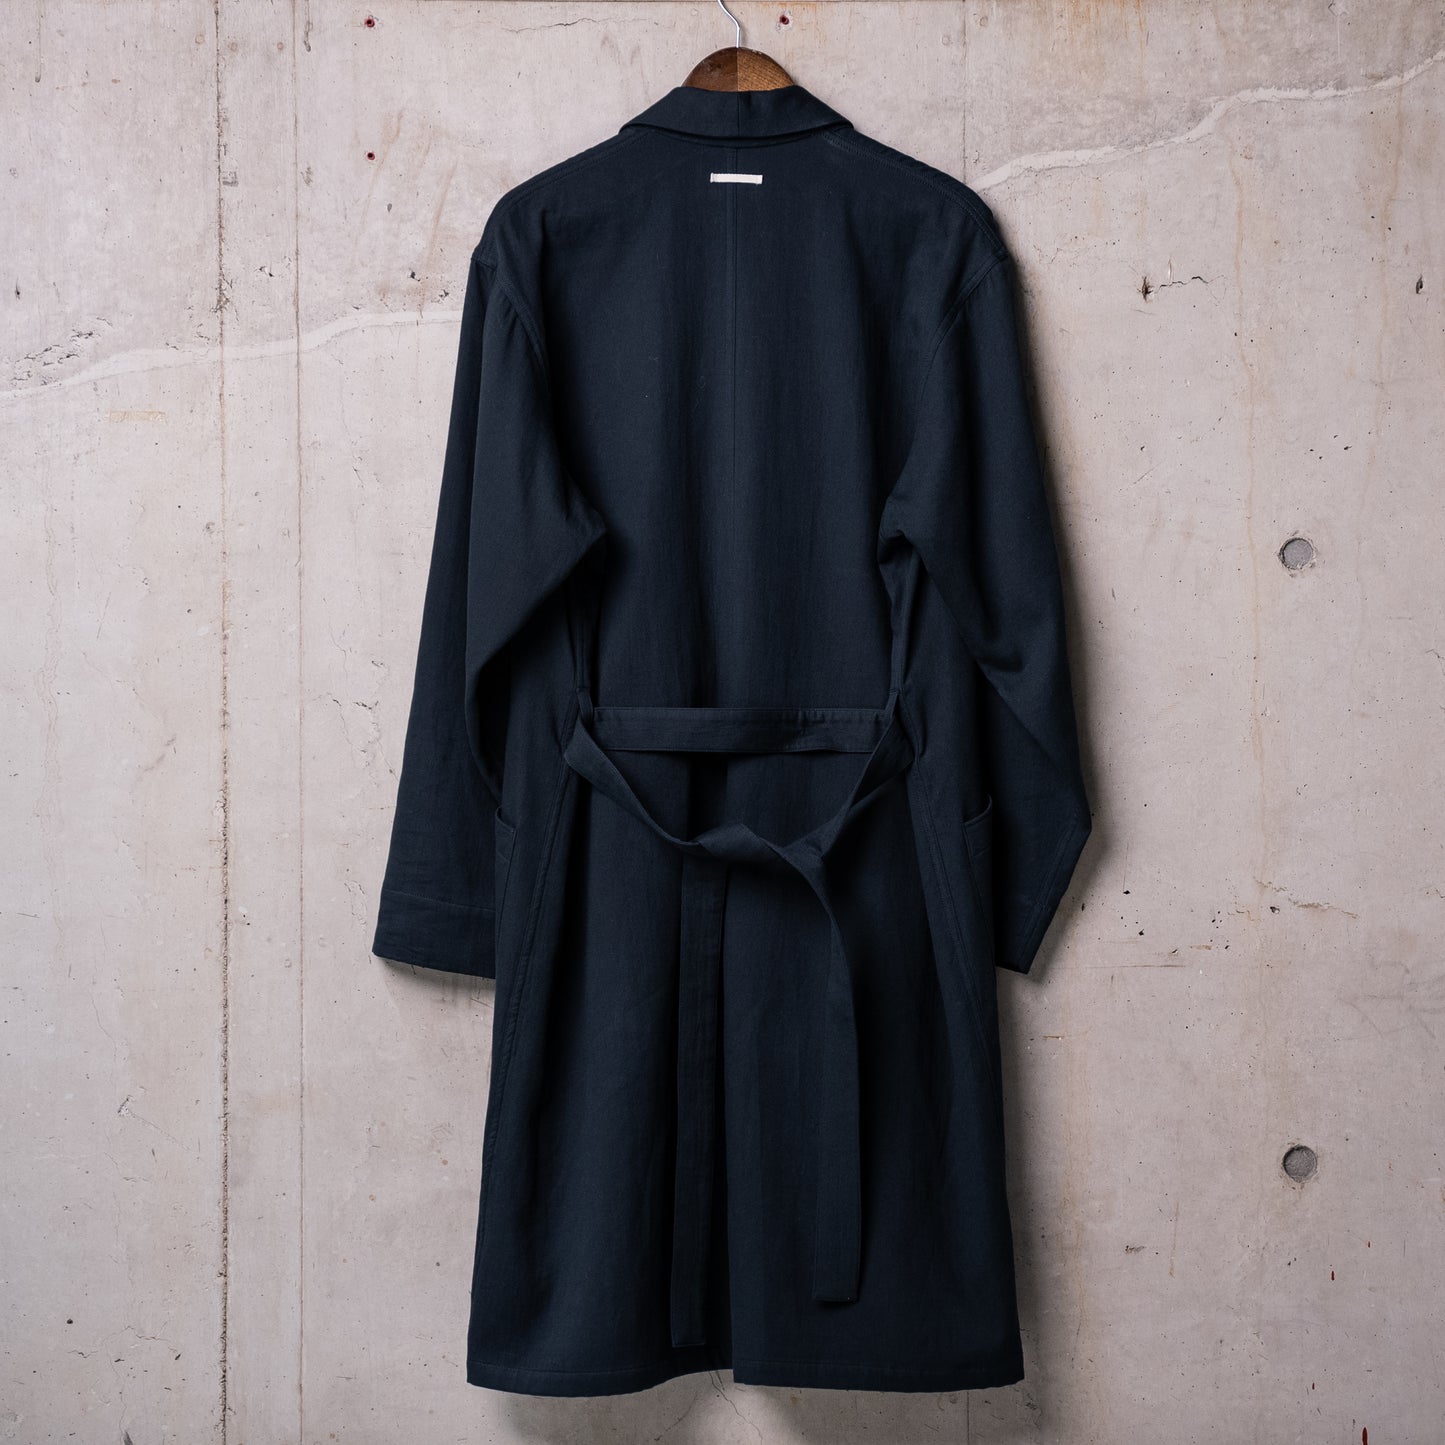 Gown coat